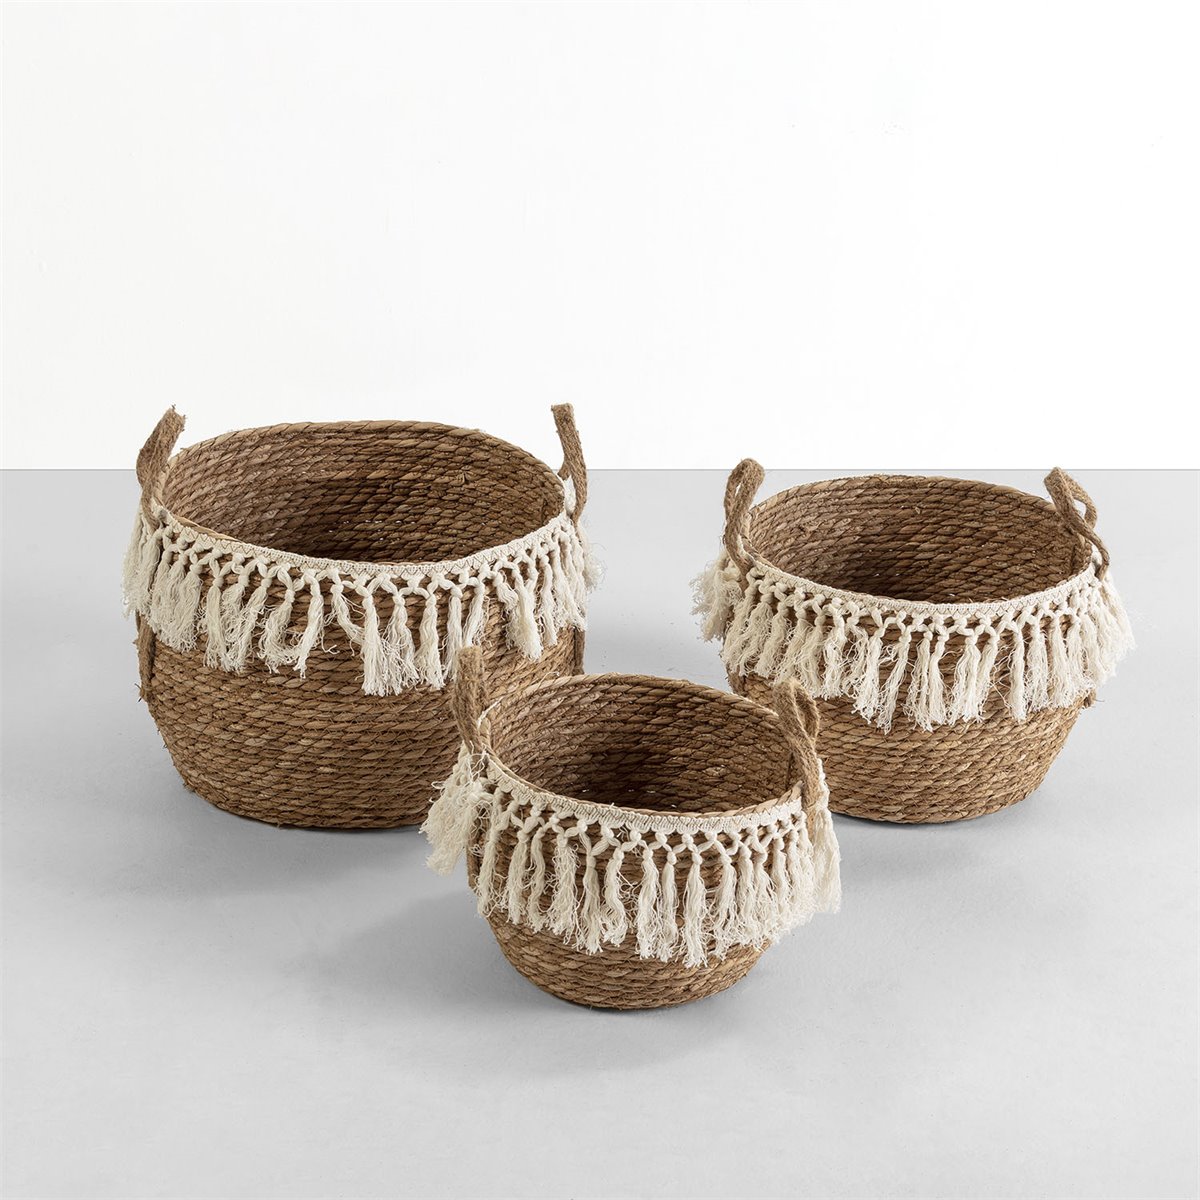 Comprar cestas almacenaje decoración. Tienda online barata